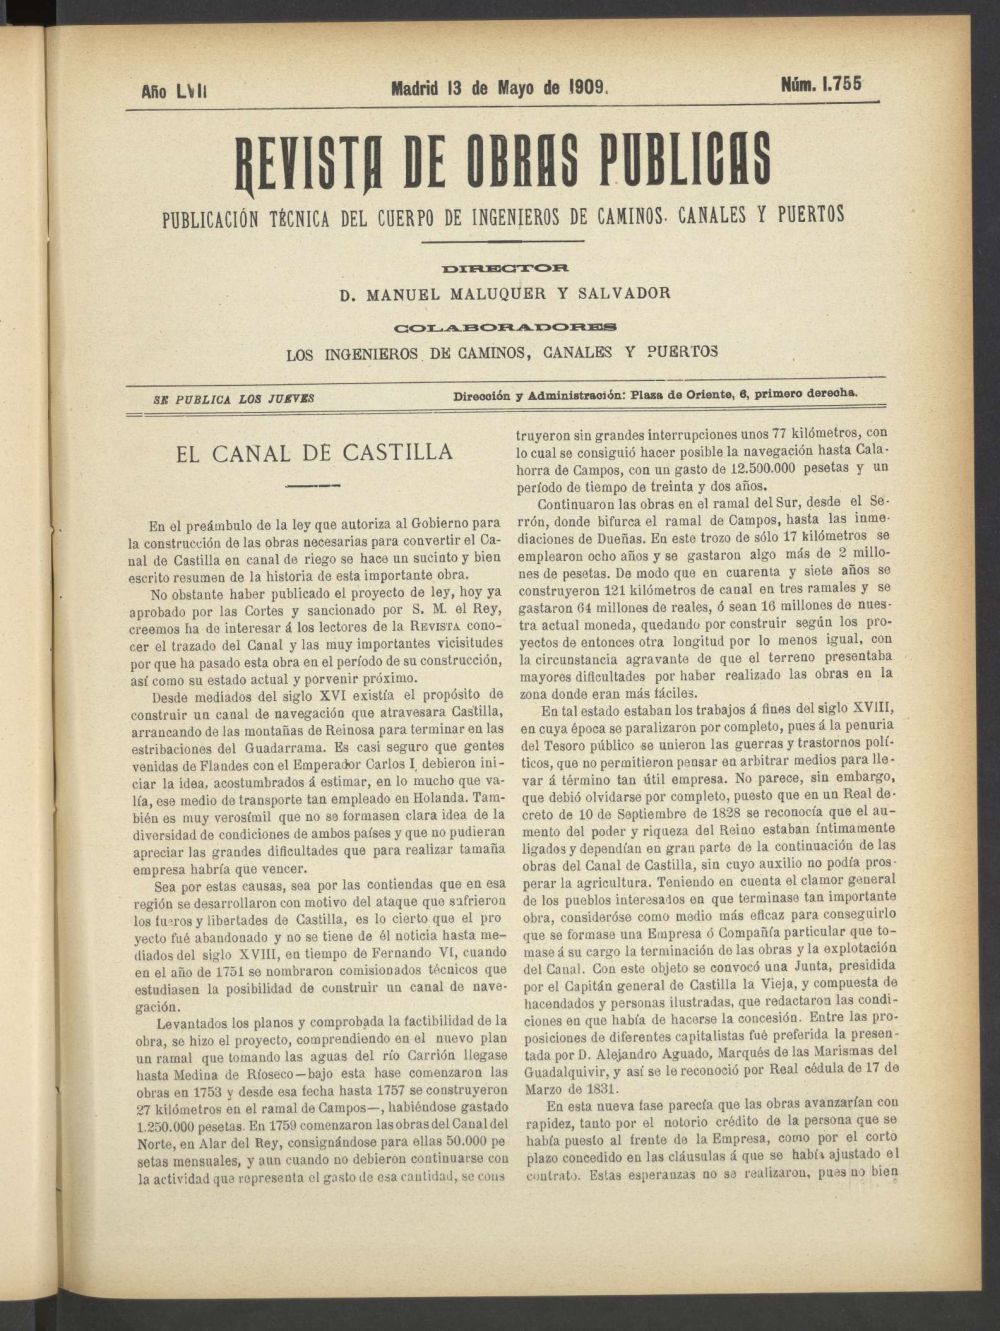 Revista de obras pblicas del 13 de mayo de 1909